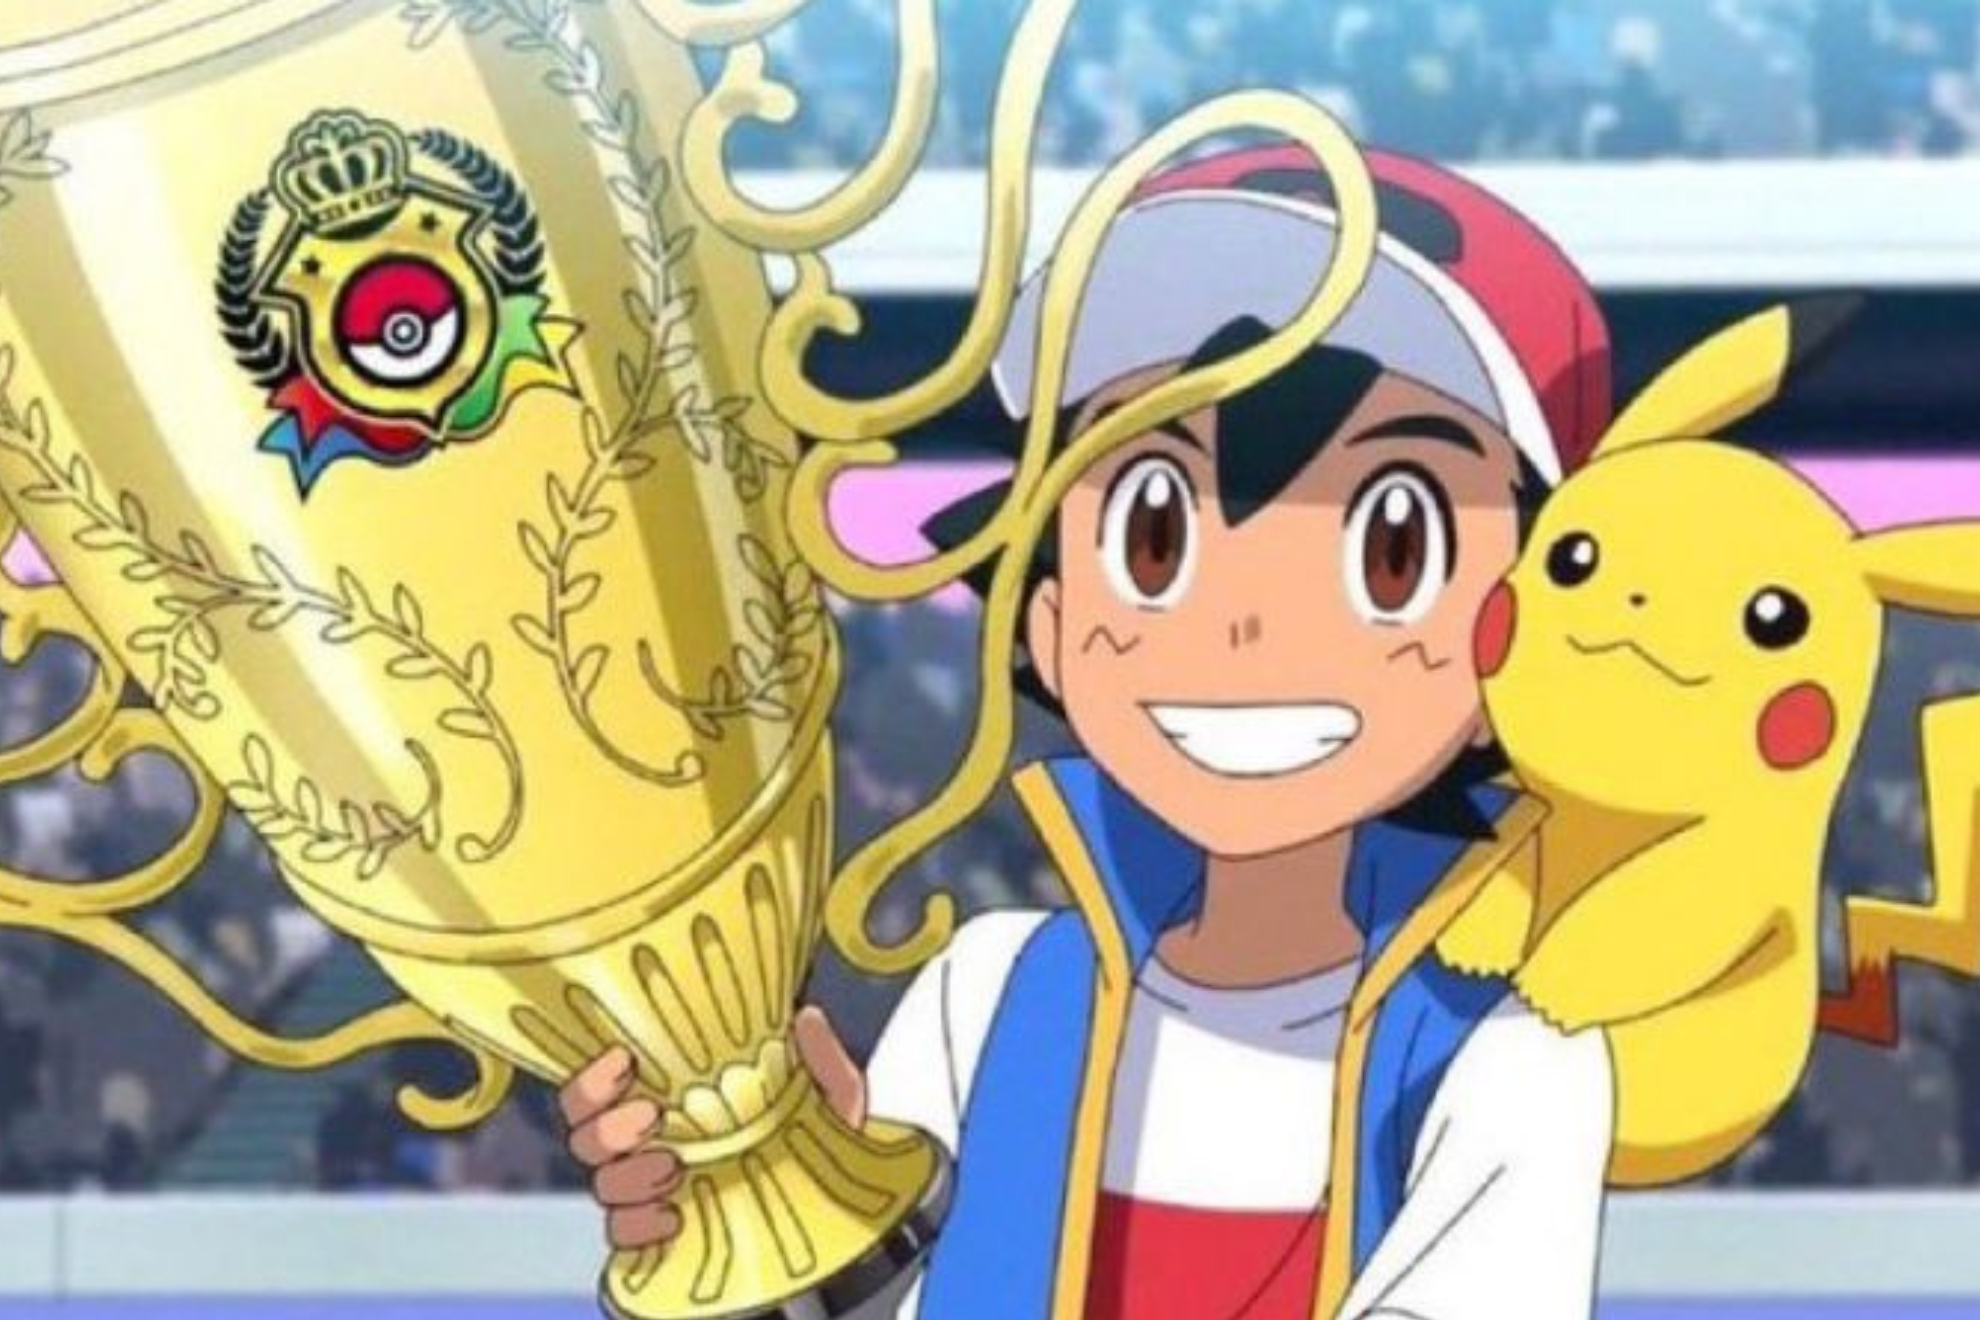 Ash junto a Picachu concluyó su misión de convertirse en un maestro Pokémon.